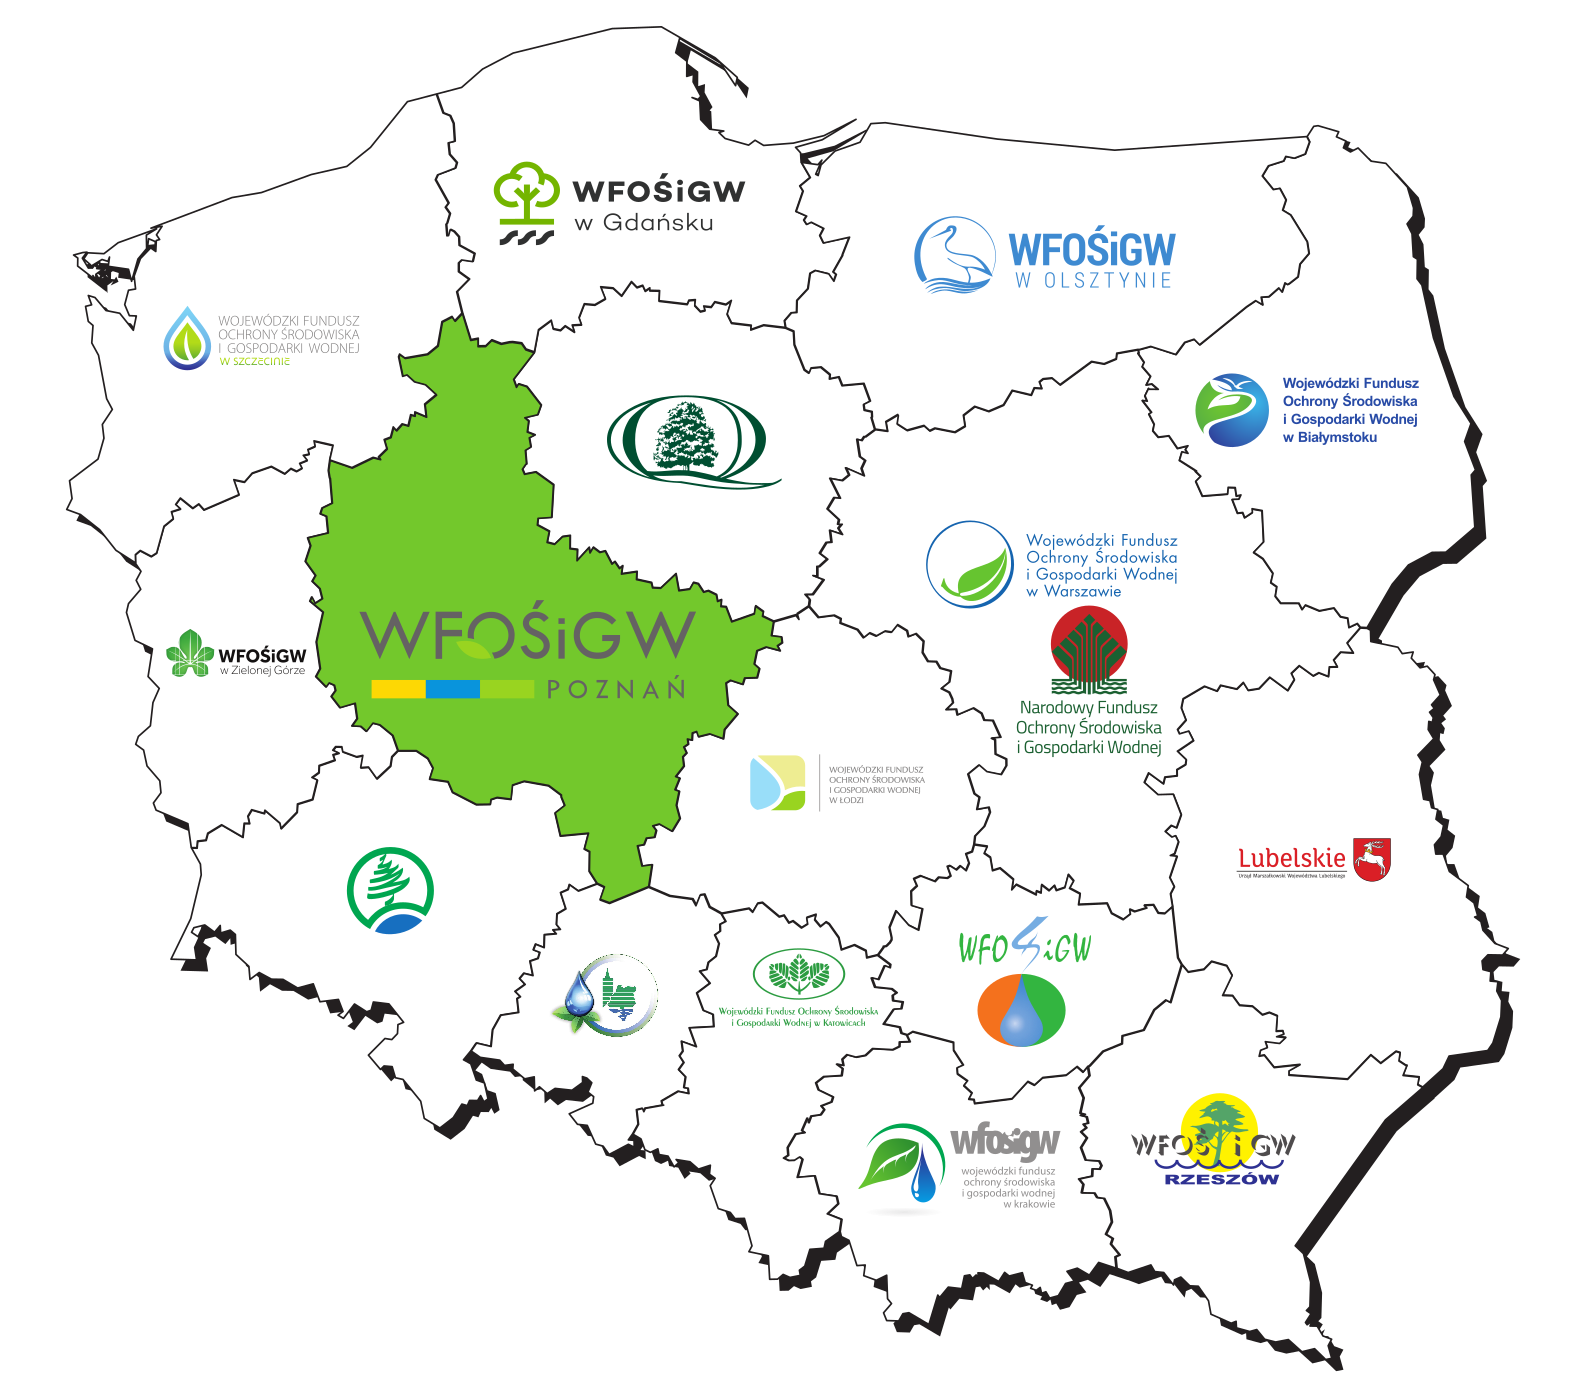 Mapa Polski z podziałem na wojewódzkie fundusze ochrony środowiska